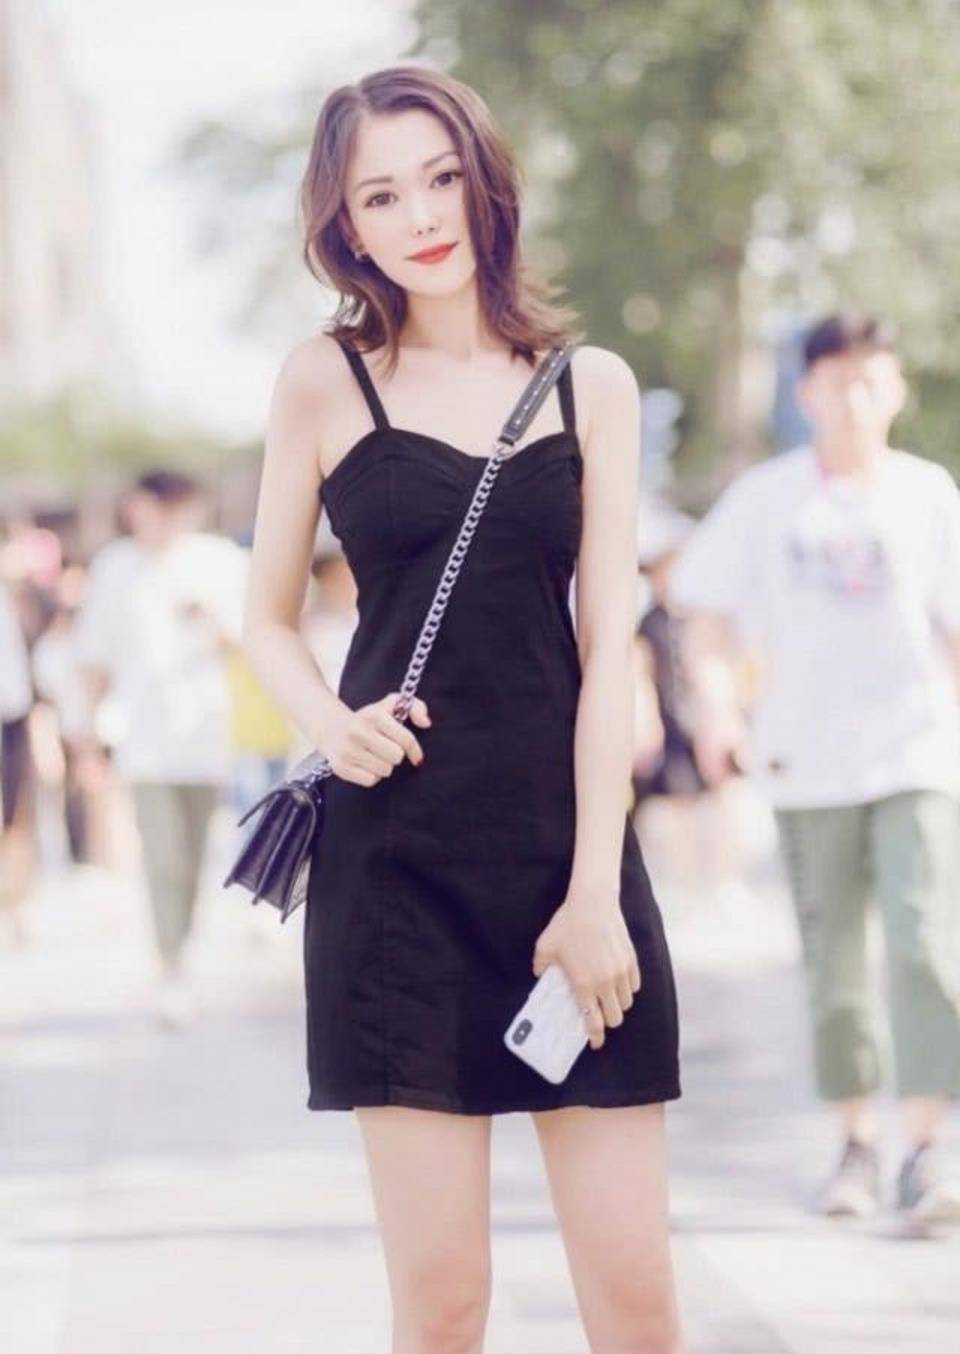 街拍,黑色的连衣裙优雅大方,提升了时尚美女的气质与品位